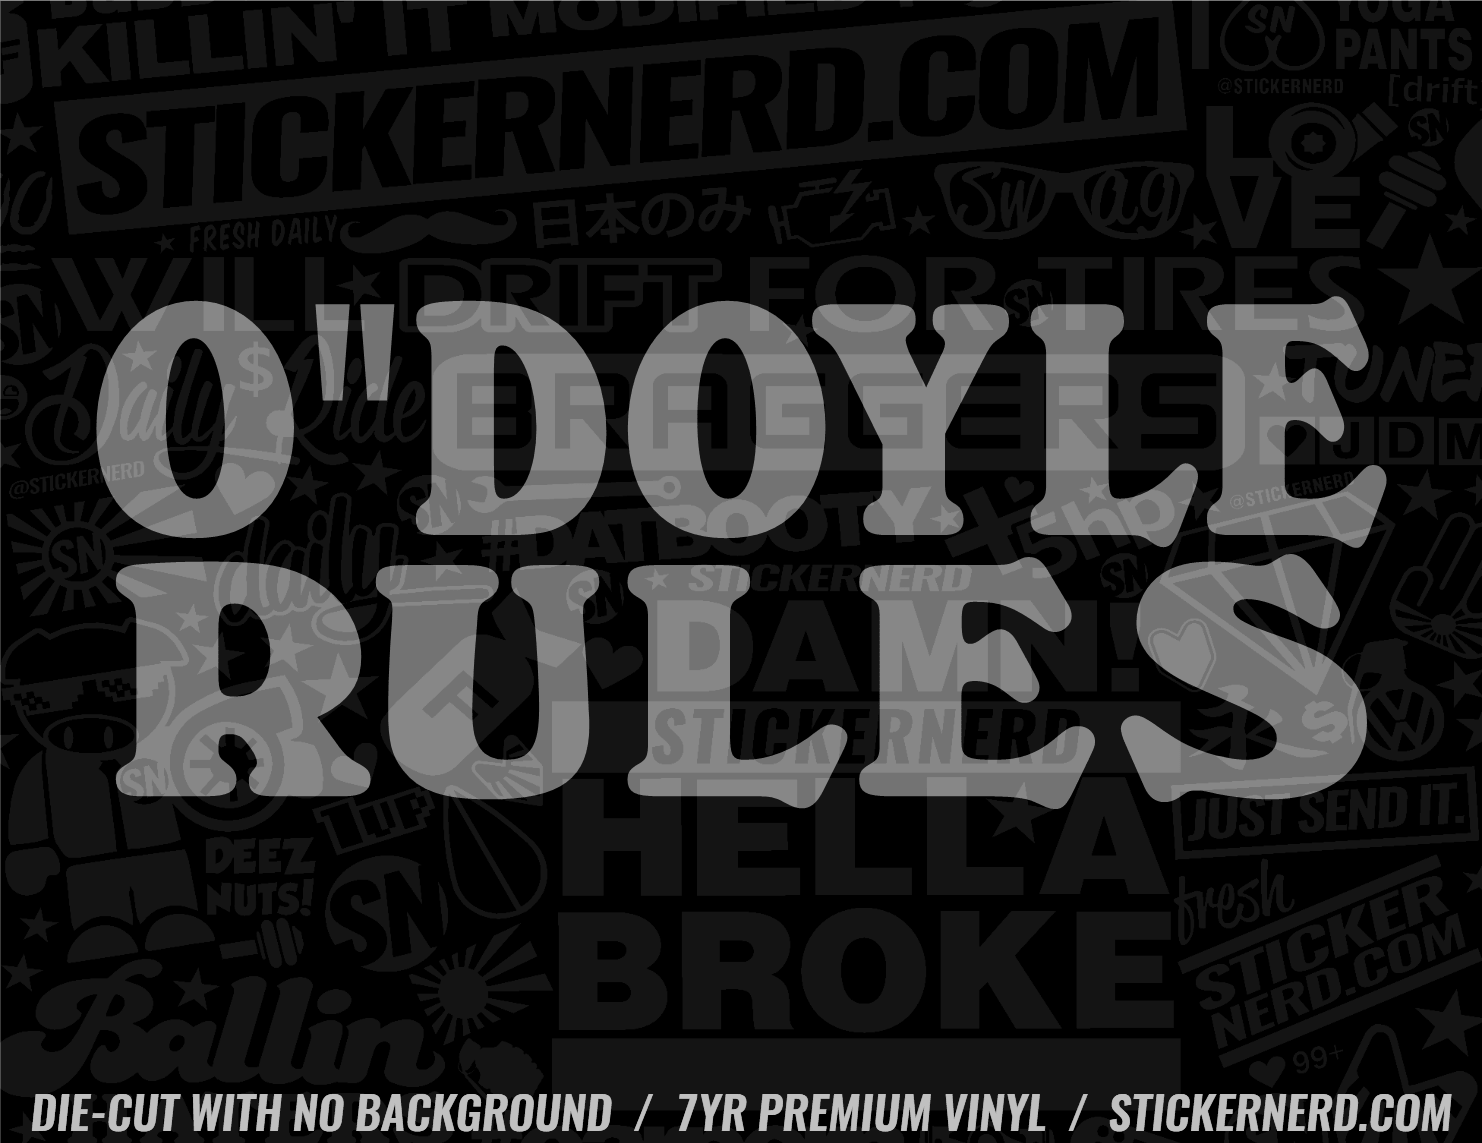 O"Doyle Rules Sticker - Decal - STICKERNERD.COM